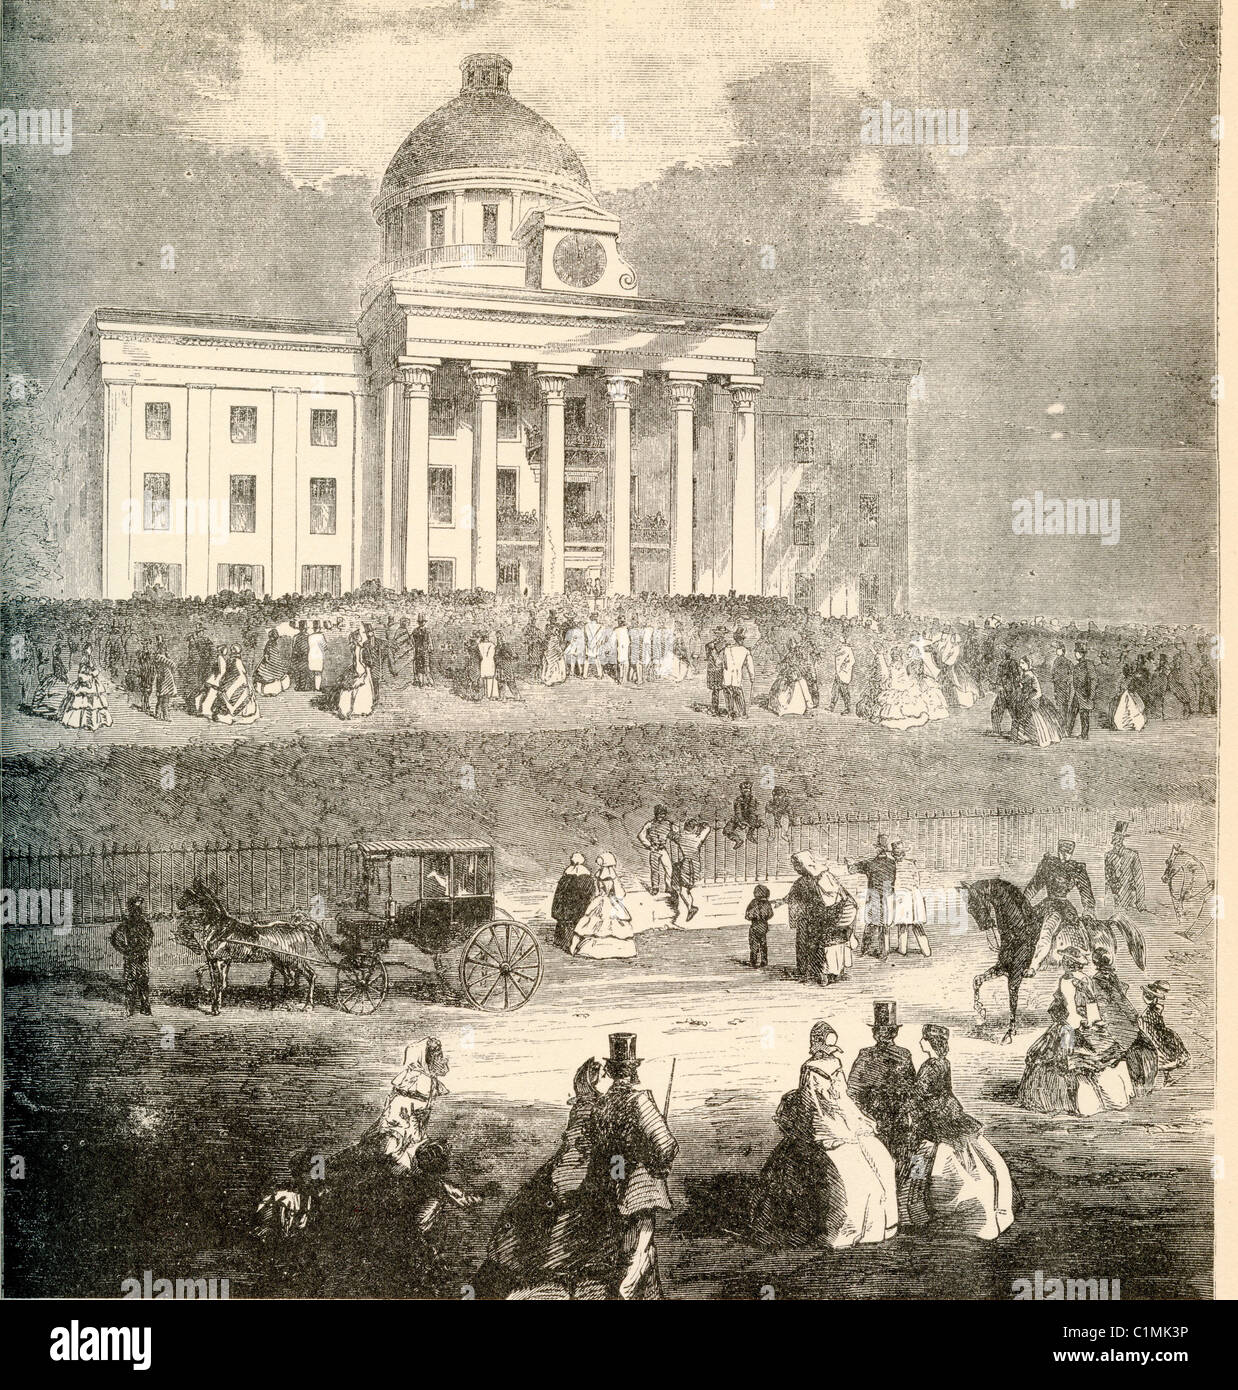 Alte Lithographie von Jefferson Davis Einweihung - Präsident der Konföderierten Staaten von Amerika Stockfoto